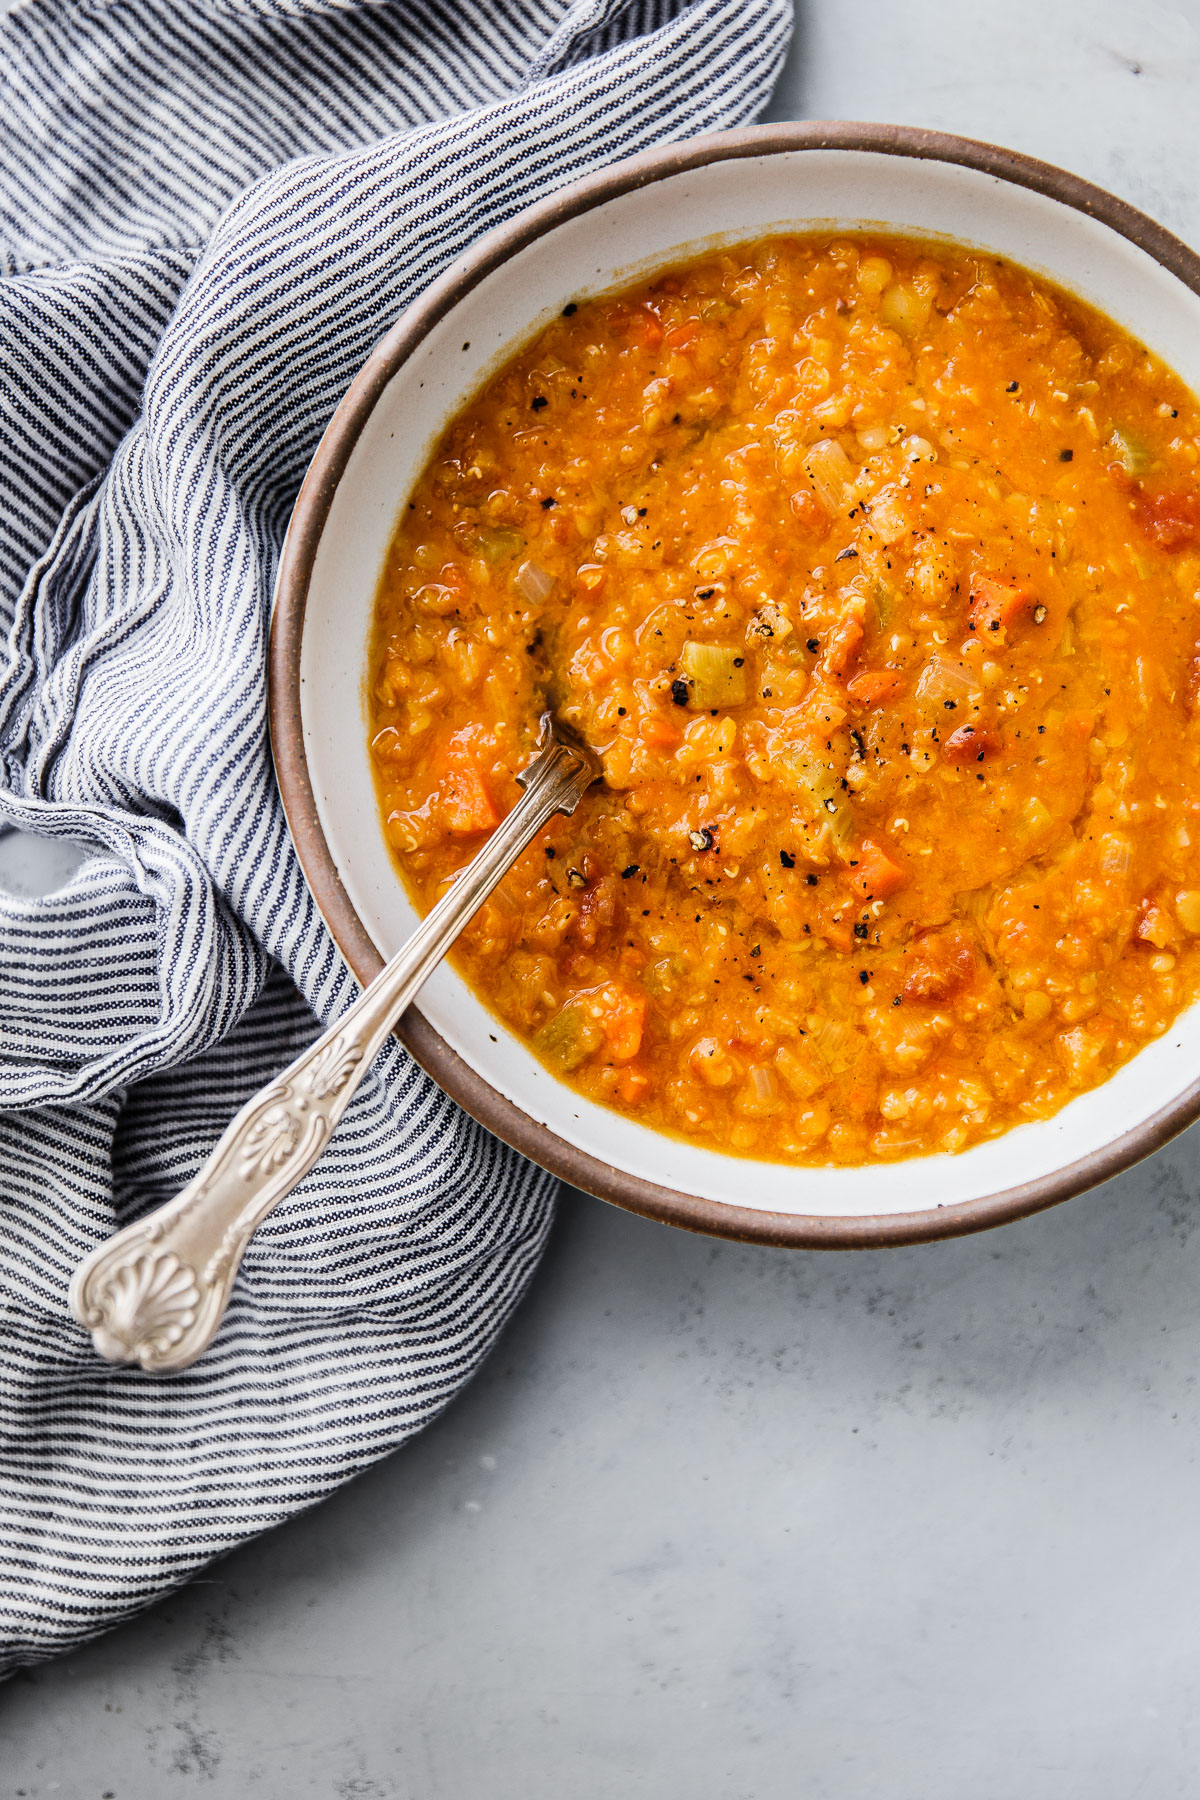 basic lentil soup recipe easy